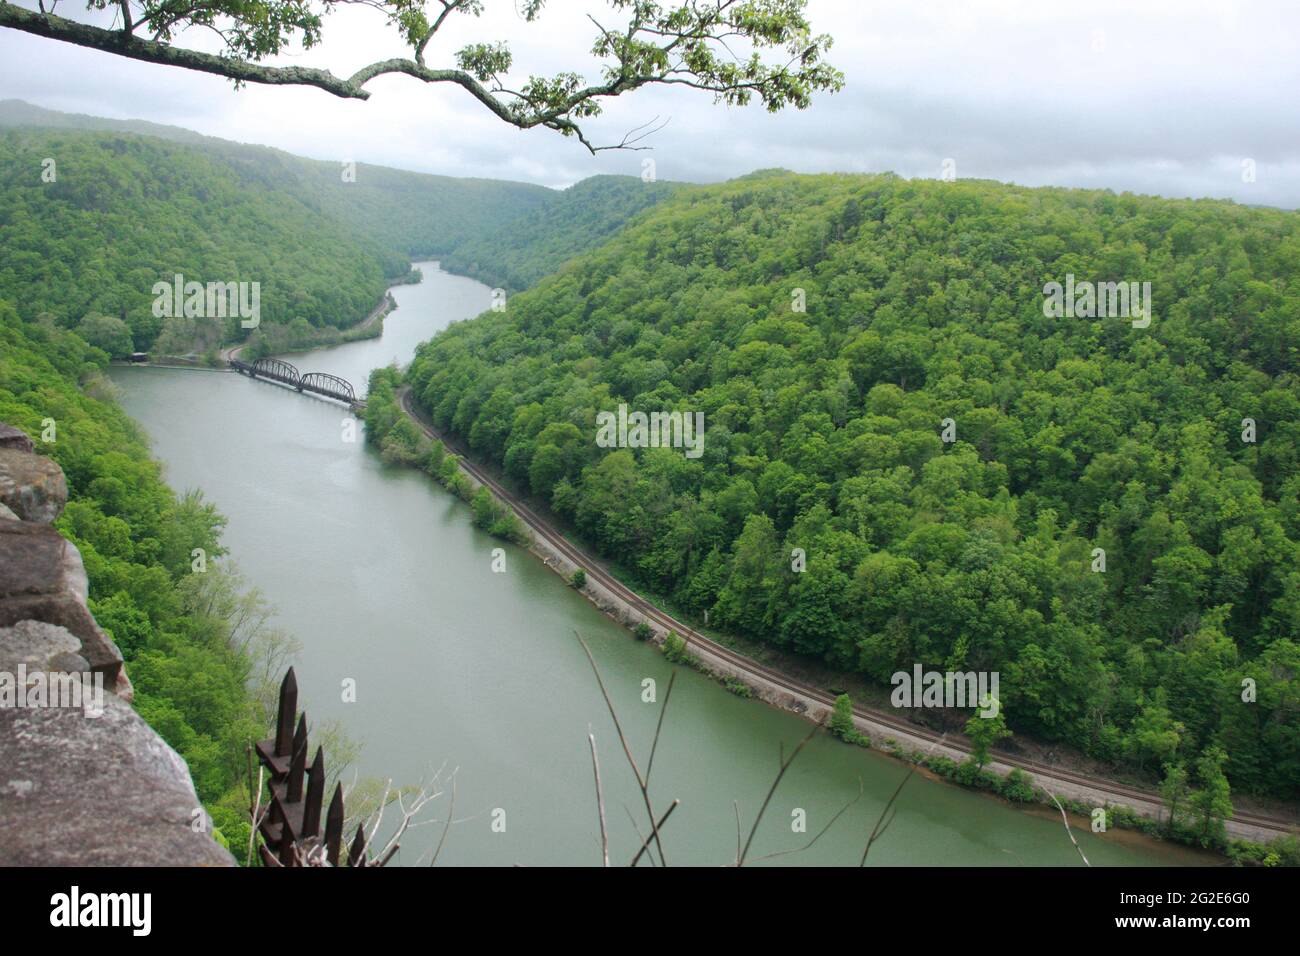 Vue panoramique sur la rivière New, vue depuis la vue sur le parc national Hawks Nest, WV, USA Banque D'Images